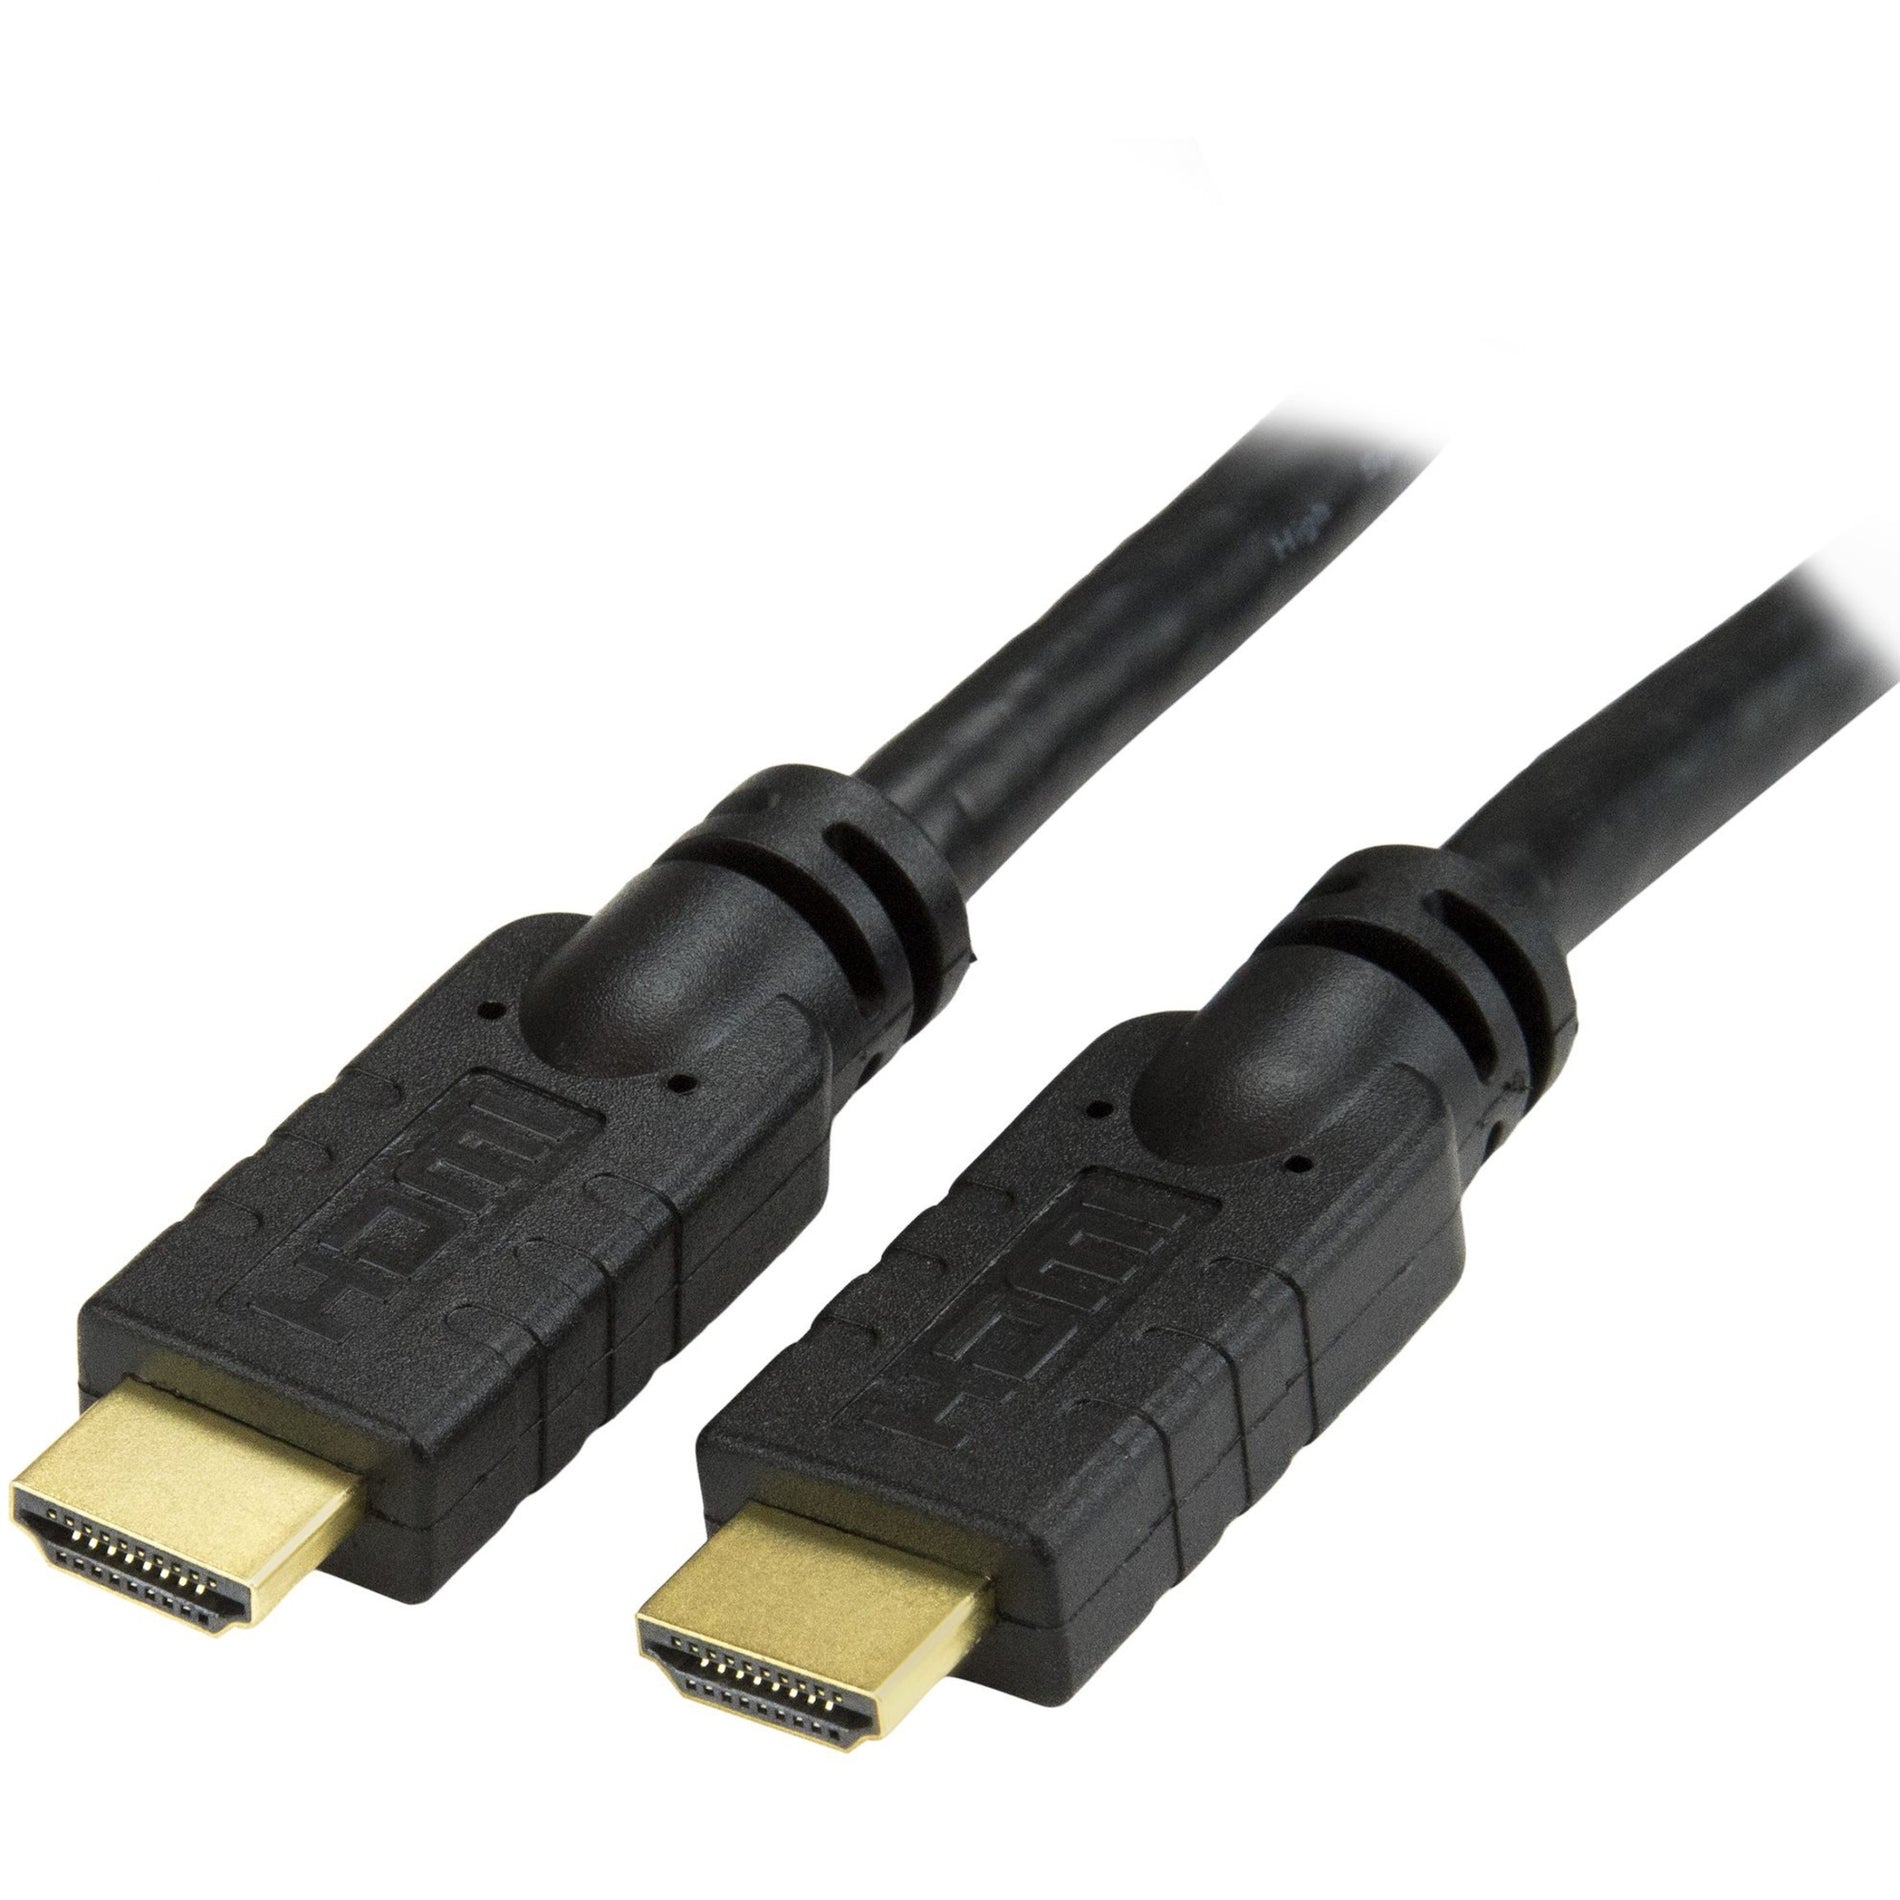 StarTech.com HDMIMM20HS HDMI Audio/Video Kabel mit Ethernet 20 ft High Speed HDMI Kabel mit Ultra HD 4k x 2k Korrosionsbeständig vergoldete Stecker